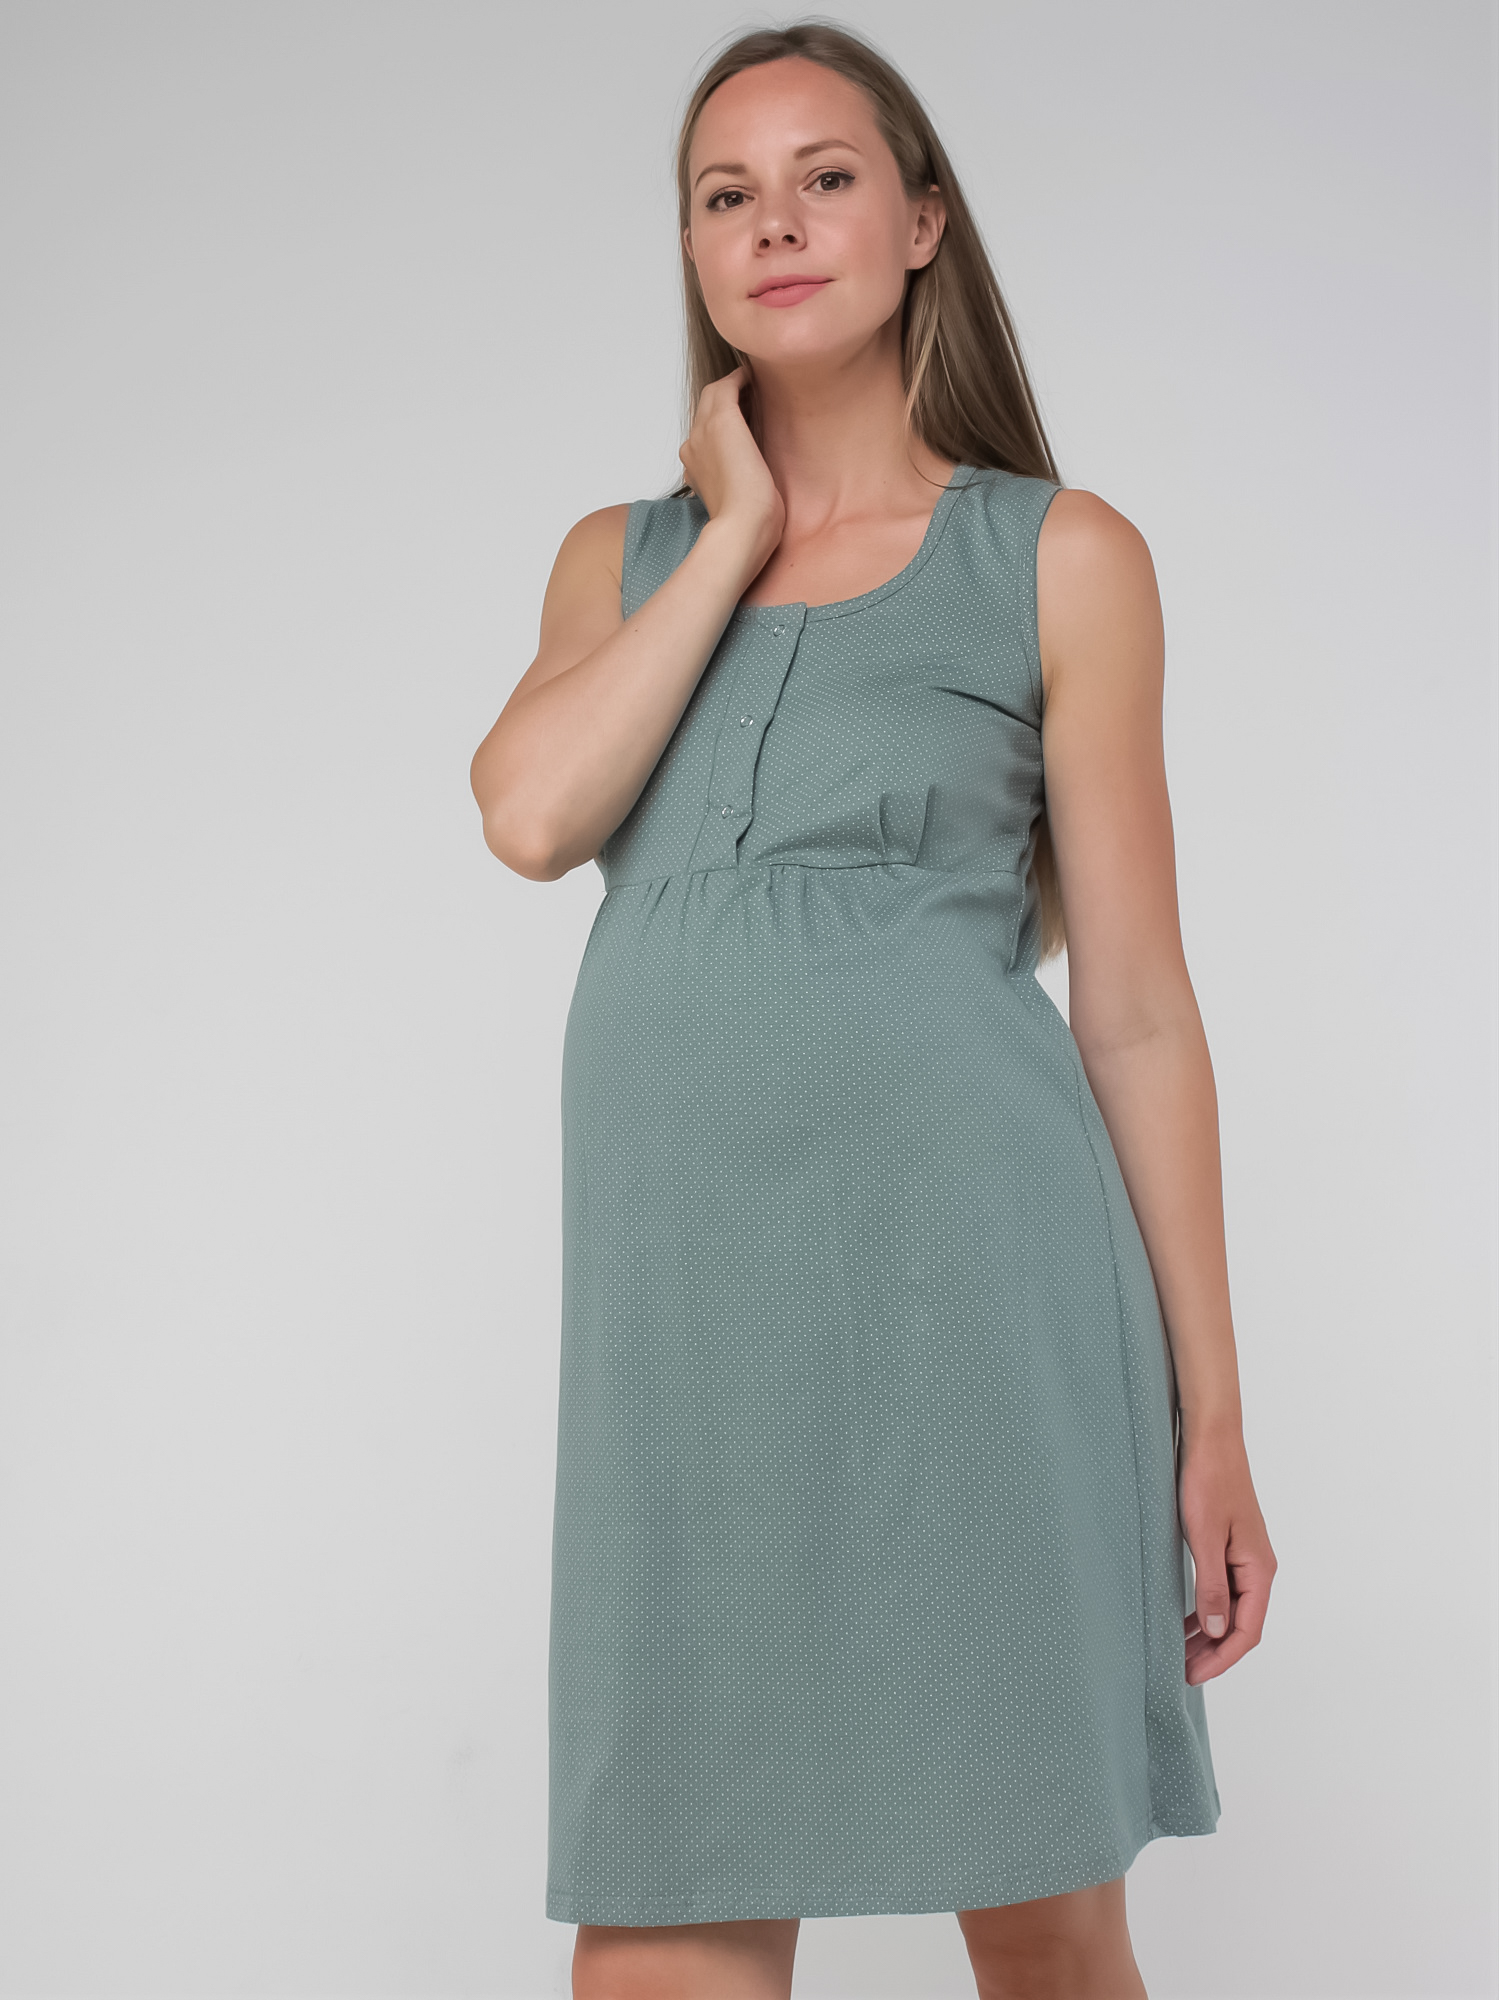 Сорочка для беременных и кормящих арт.270700 хаки